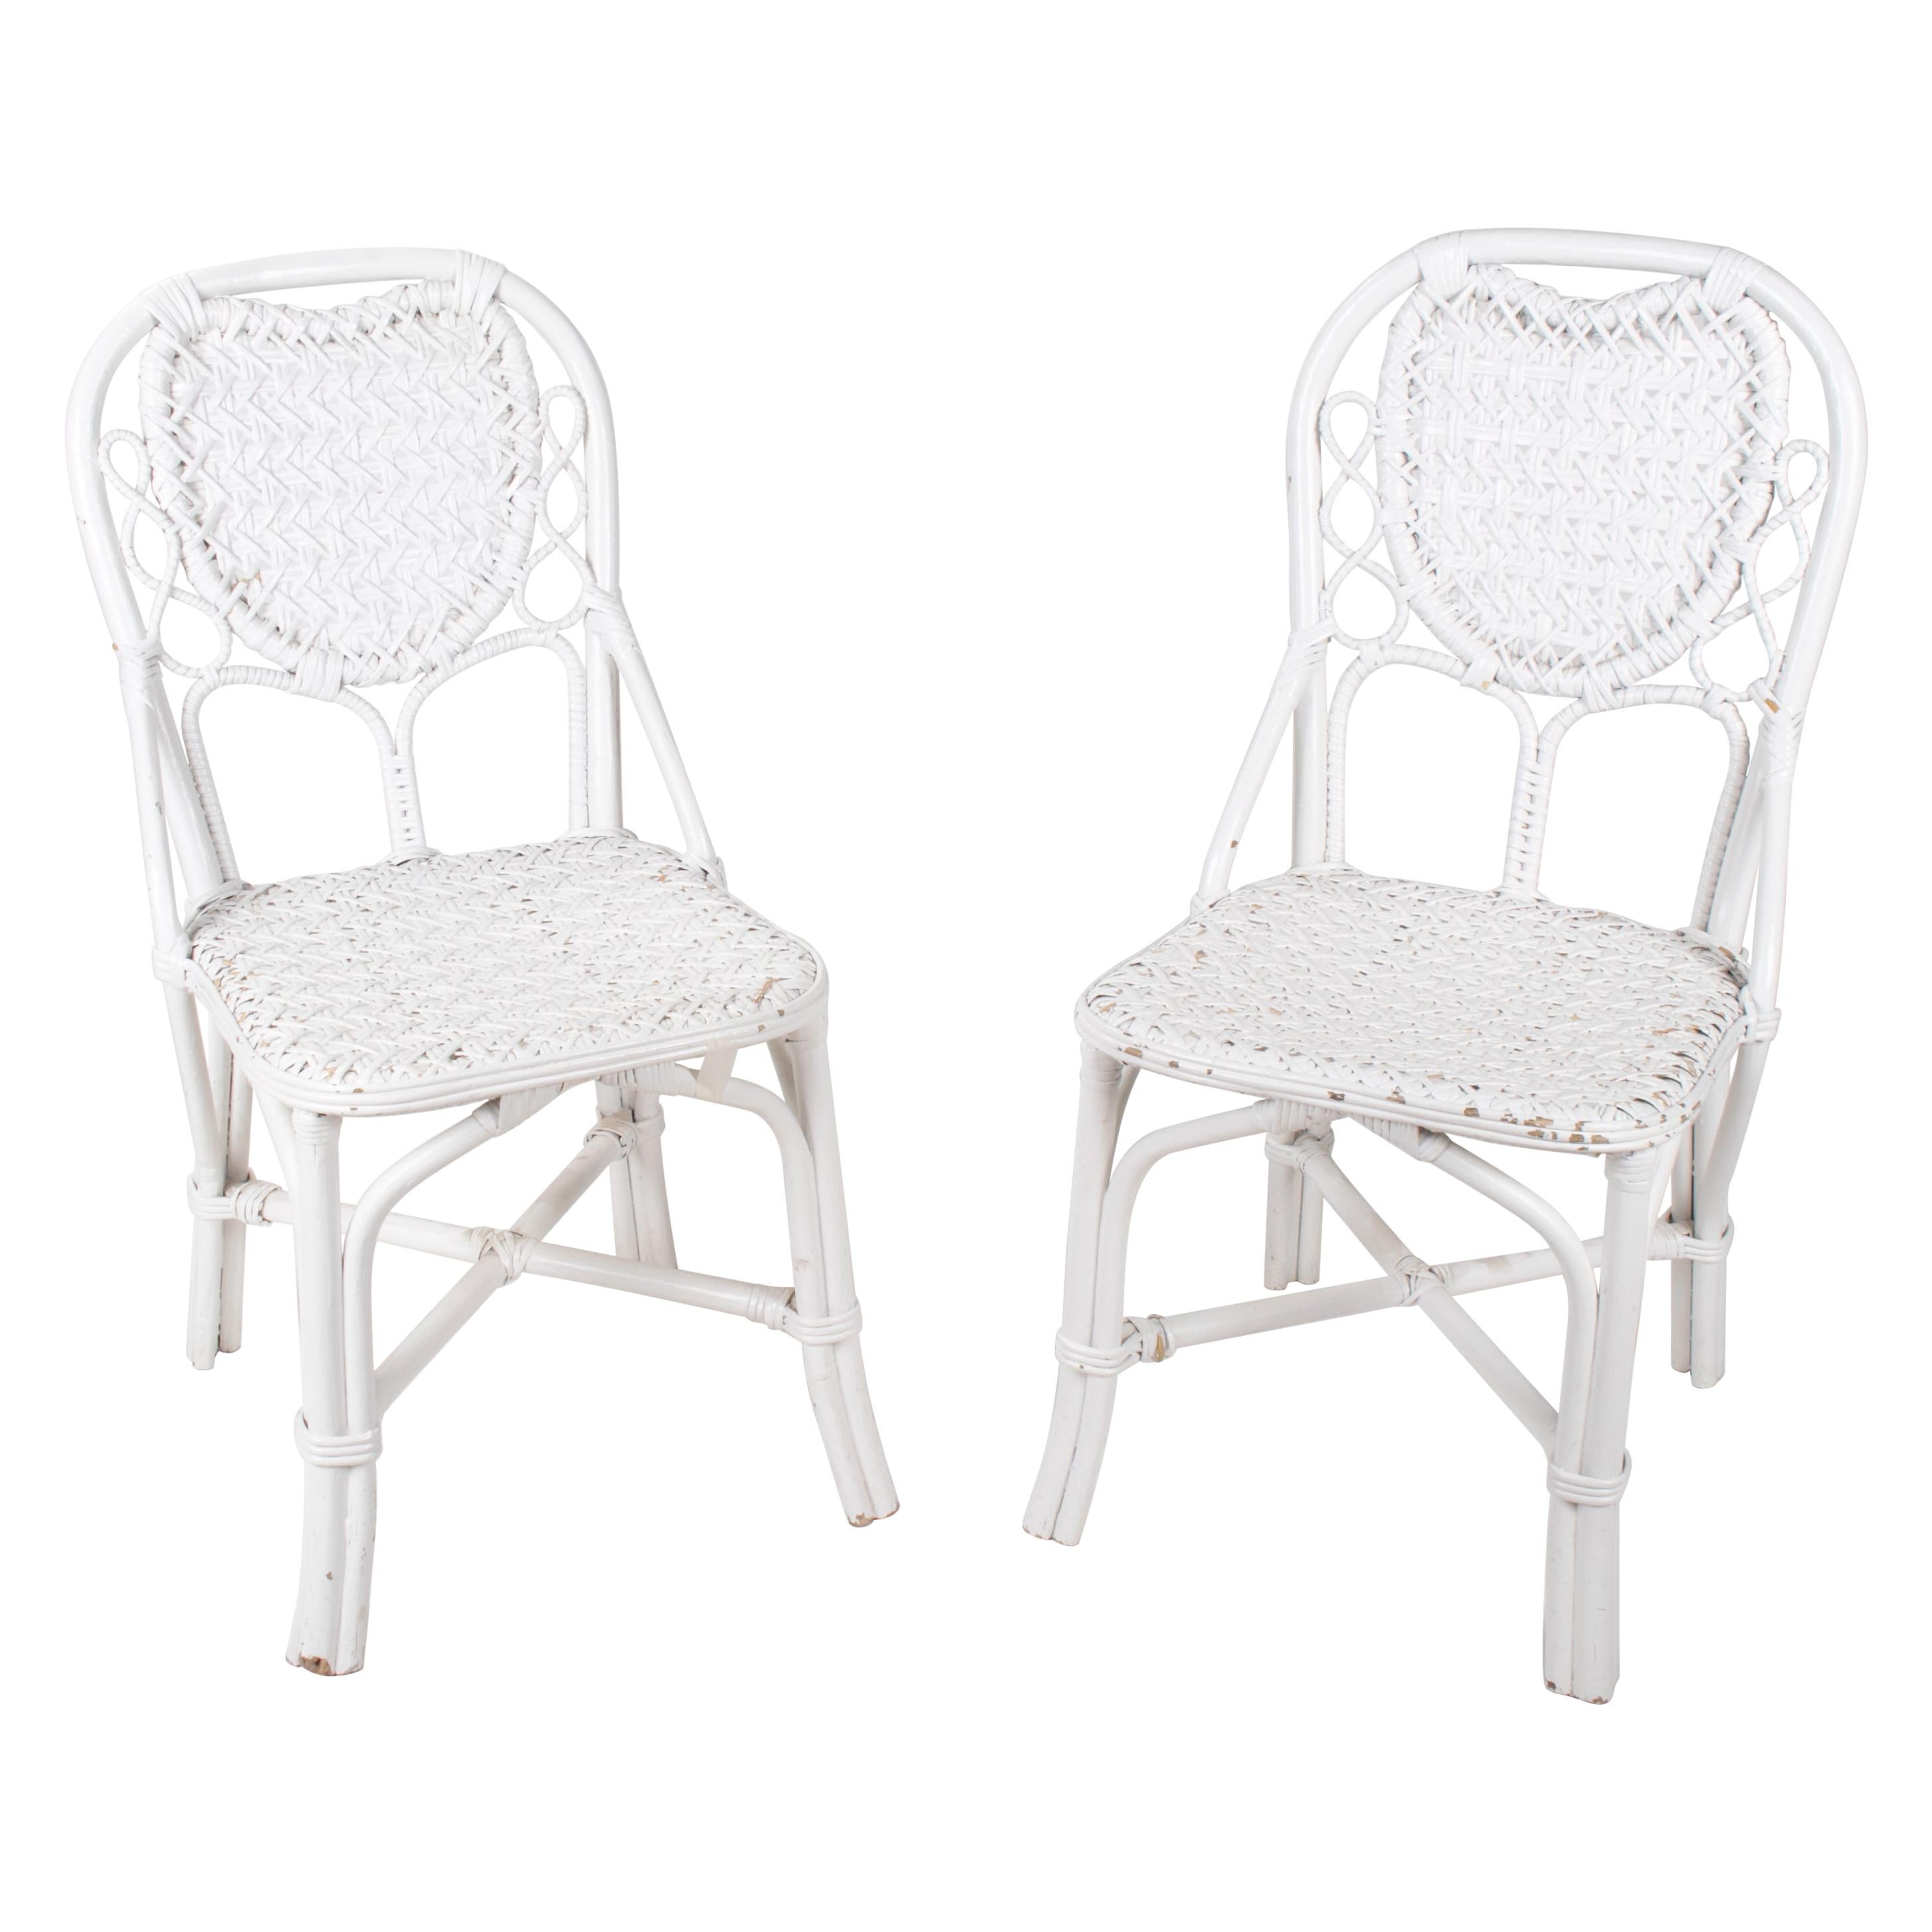 1970s Pair of Spanish Handmade White Wicker Wooden Chairs